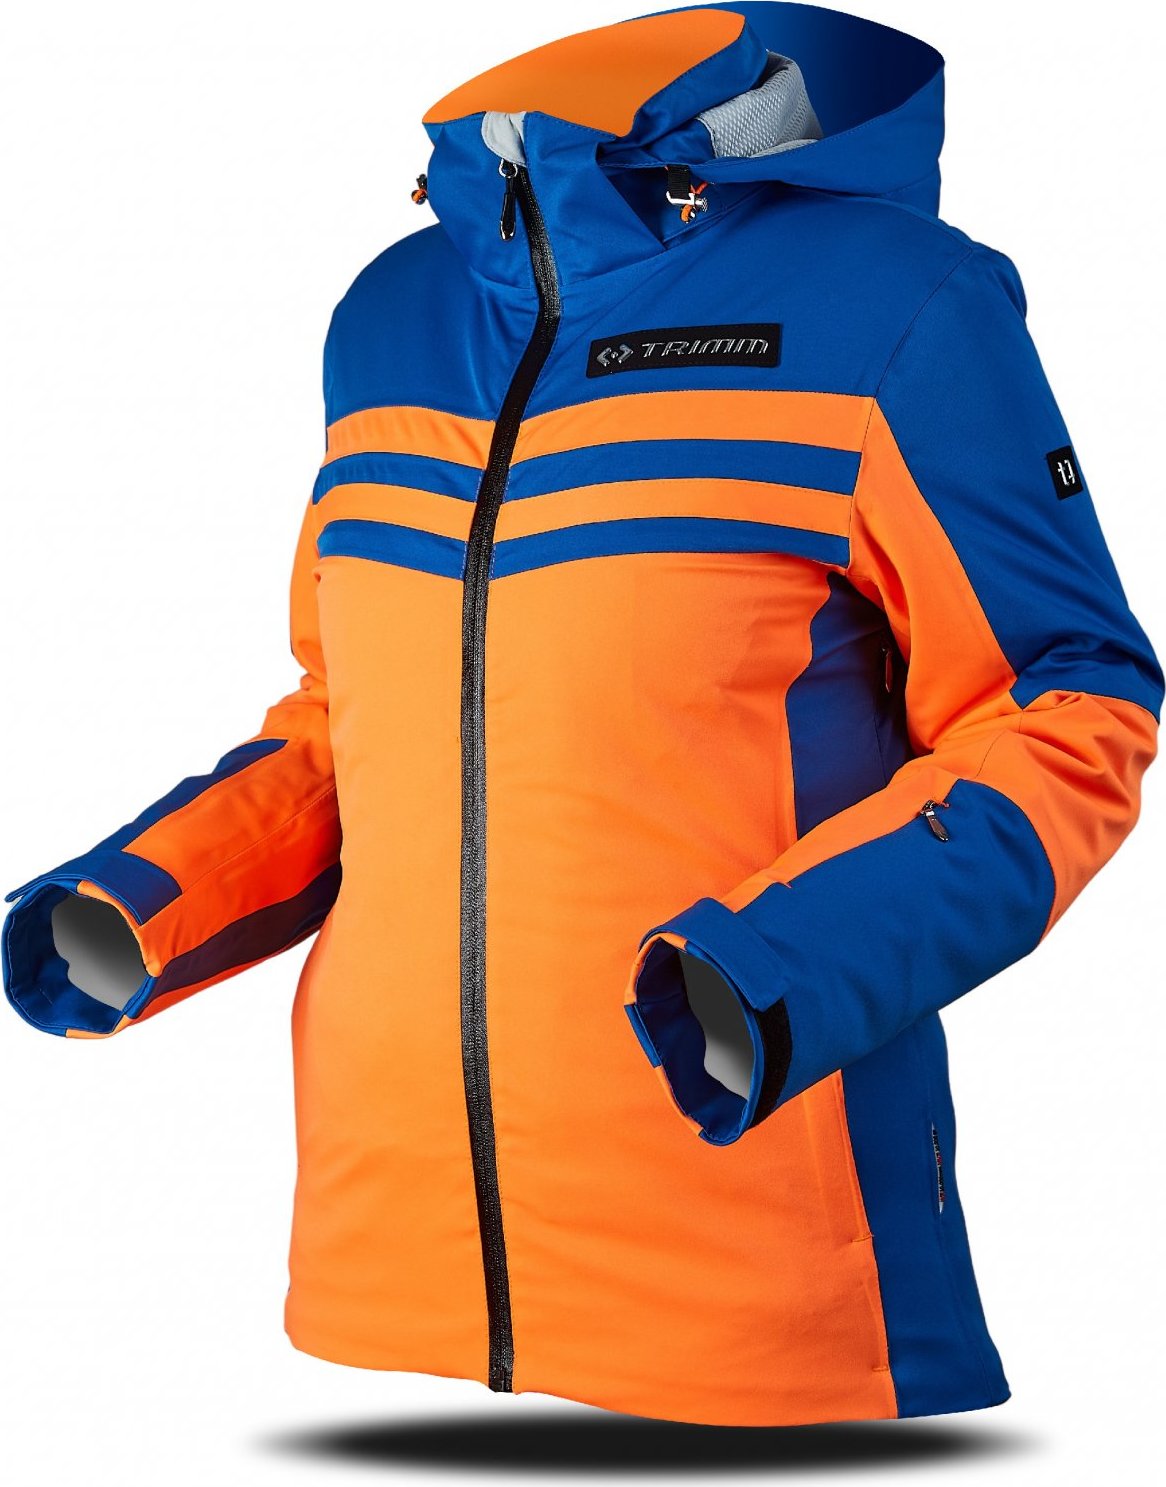 Dámská lyžařská bunda TRIMM Ilusion oranžová/modrá Velikost: L, Barva: signal orange/jeans blue